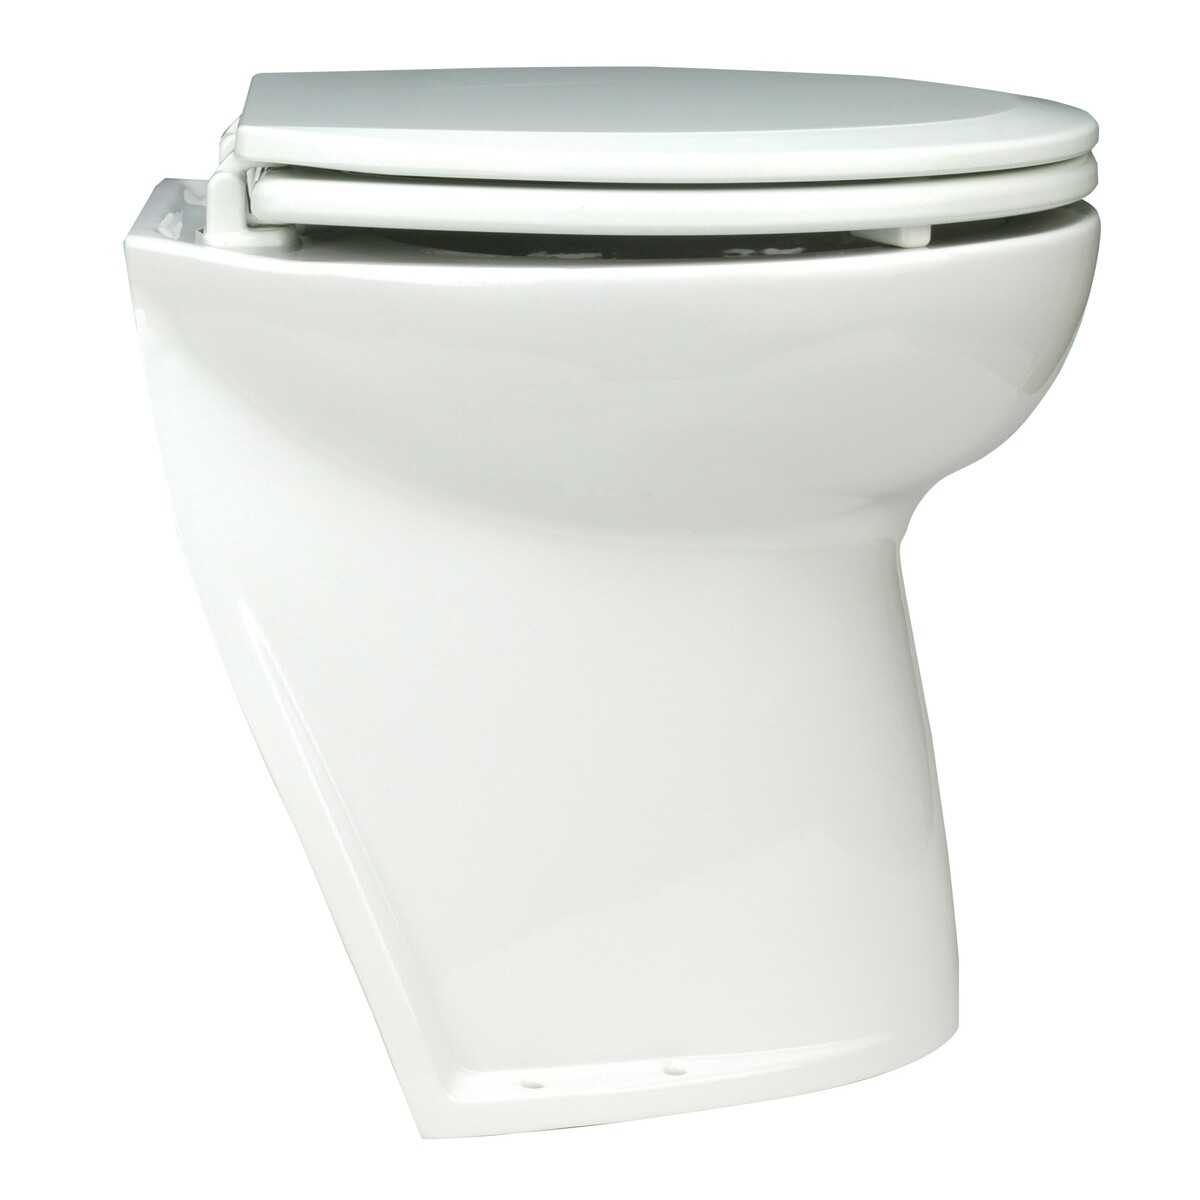 Toilette Deluxe Flush